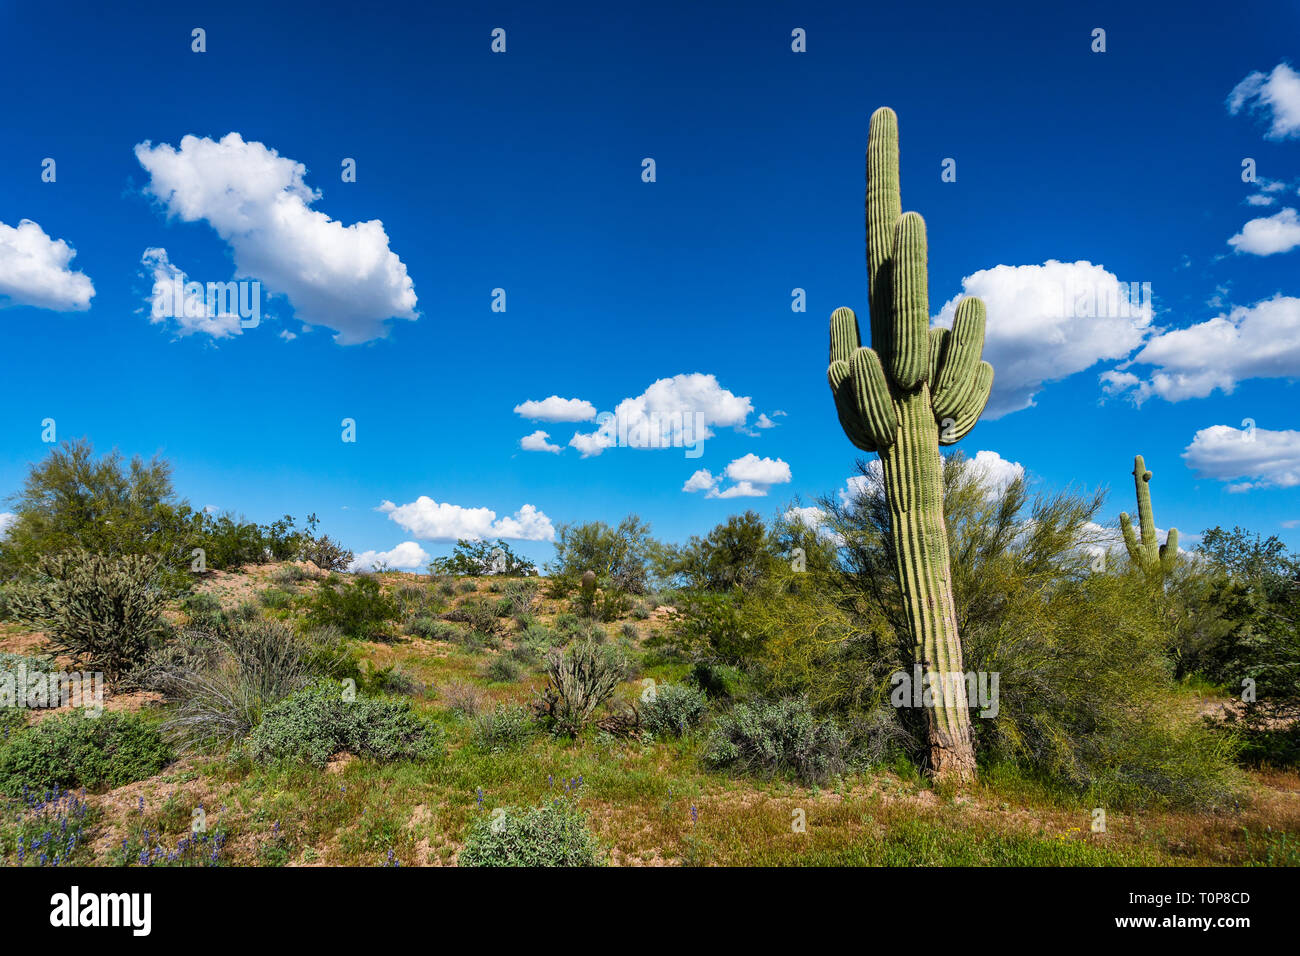 Saguaro cactus in a desert landscape in Phoenix, Arizona Stock Photo ...